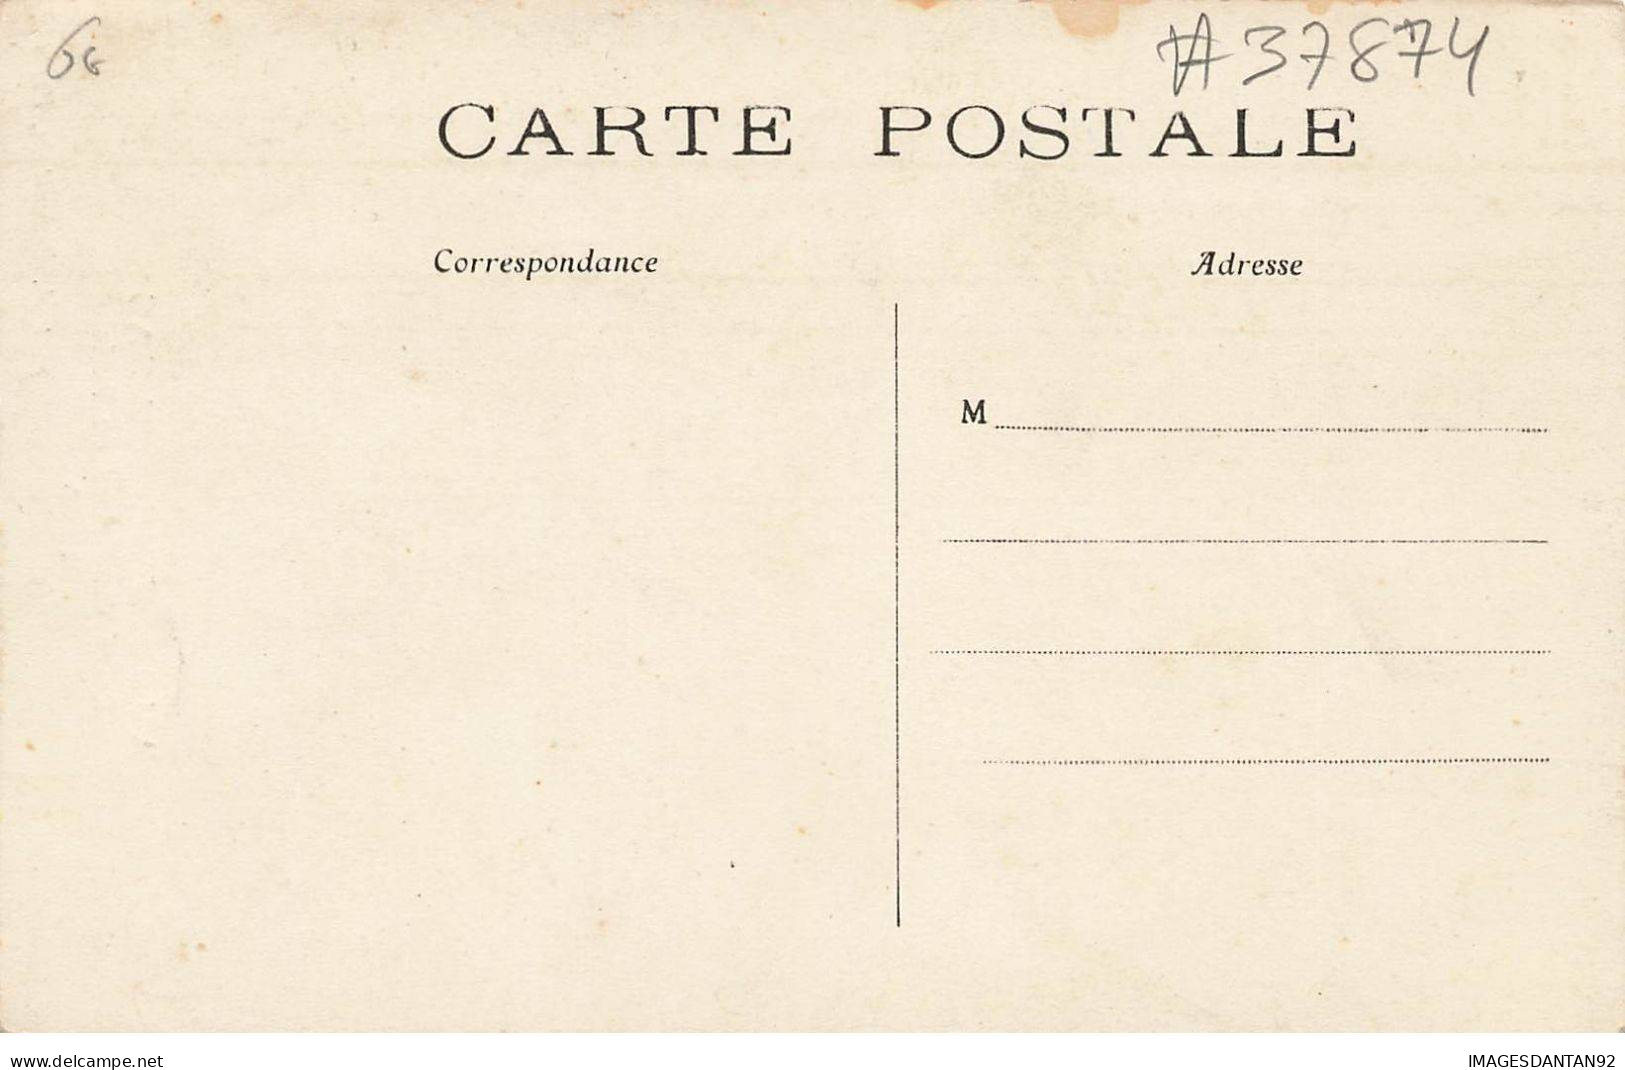 ARTISTE #FG37874 AUGUSTINE ORLHAC REINE DES REINES DE PARIS 1909 - Kabarett